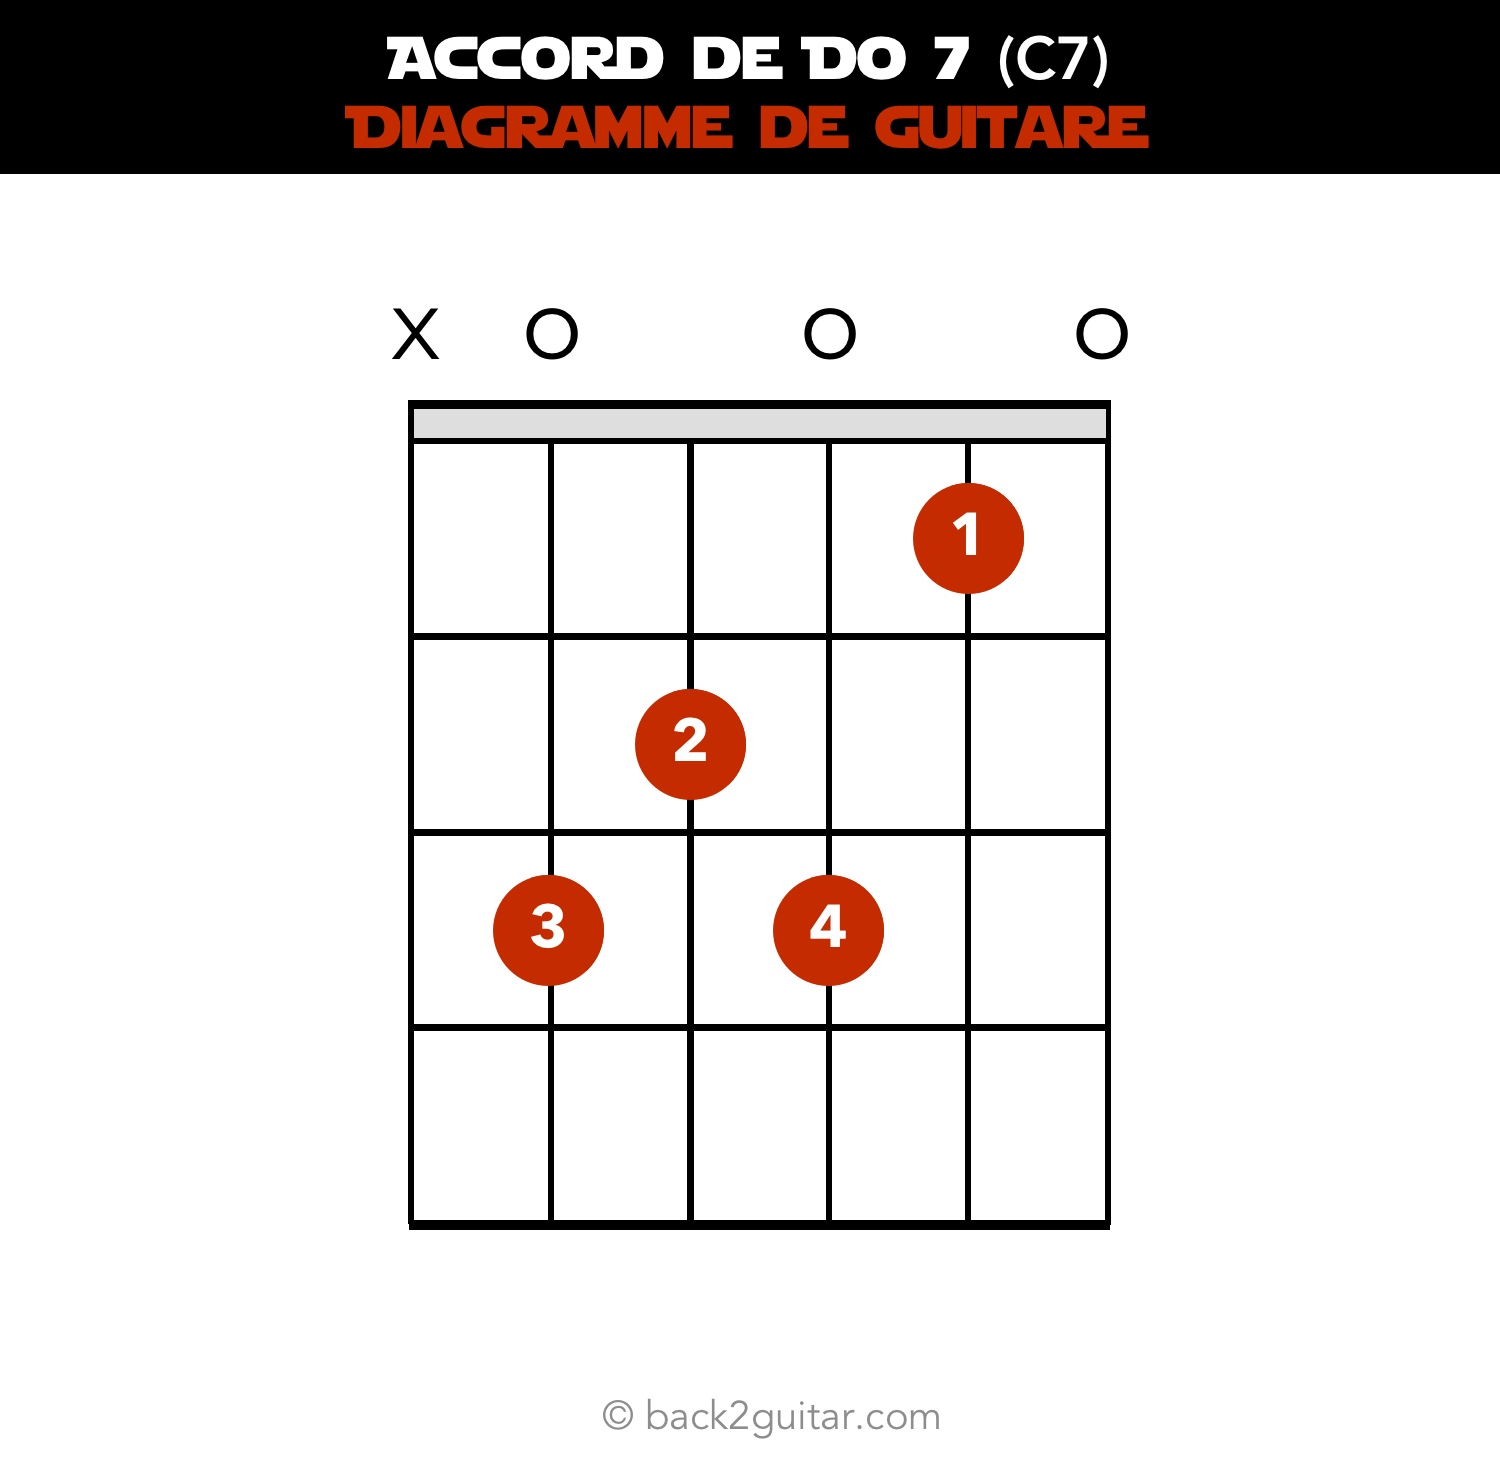 accord guitare do 7 diagramme guitare (C7)